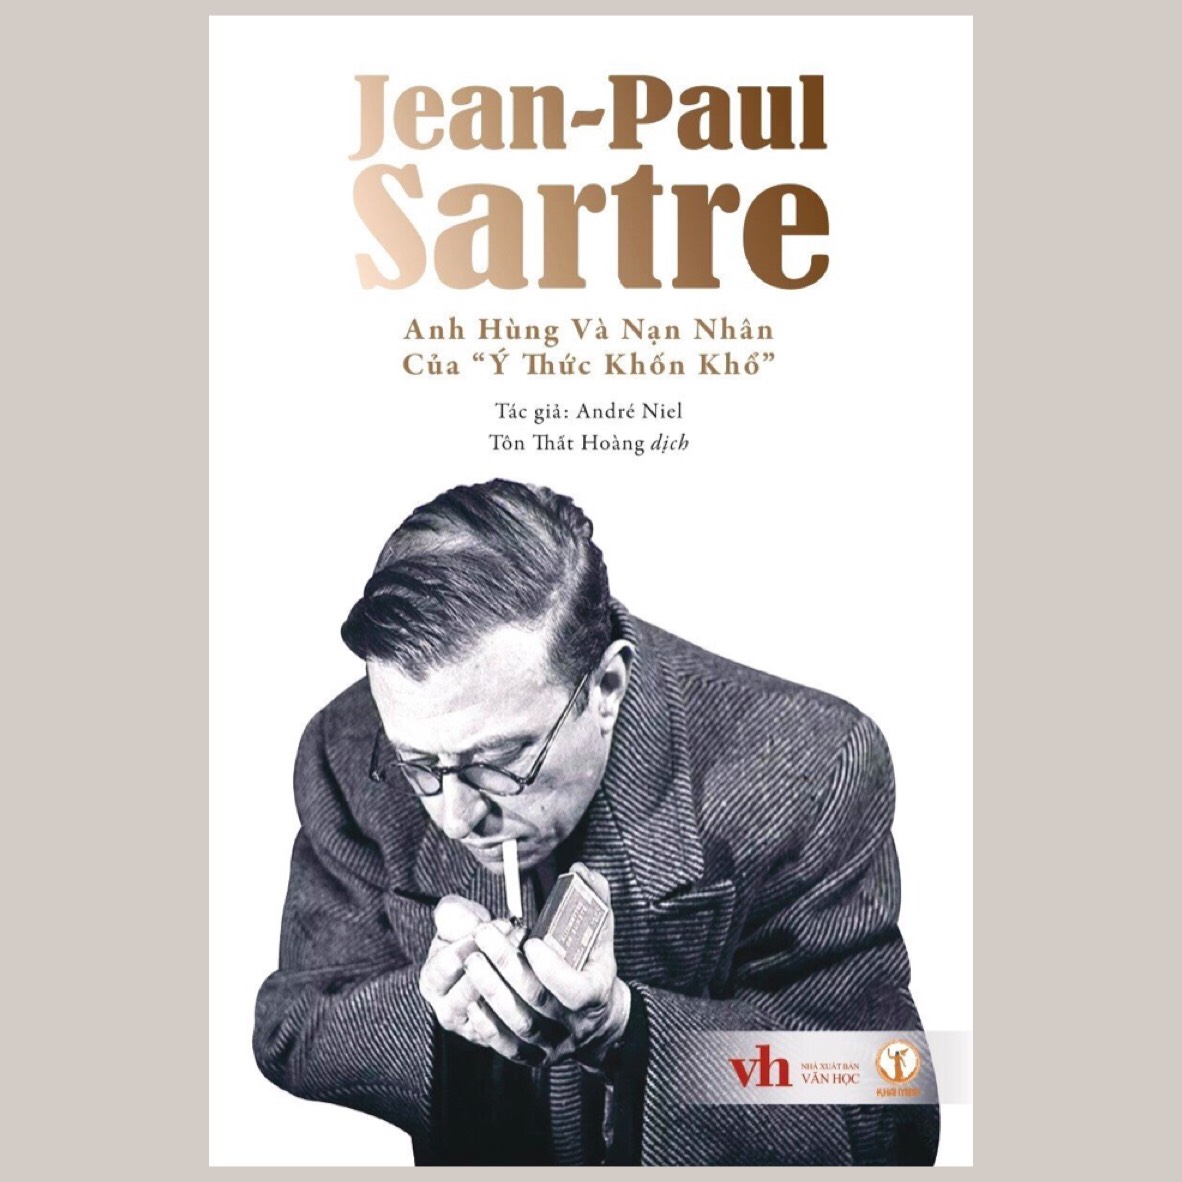 Jean-Paul Sartre - Anh Hùng Và Nạn Nhân Của "Ý Thức Khốn Khổ" - Tác giả André Niel - Tôn Thất Hoàng dịch - (bìa mềm)